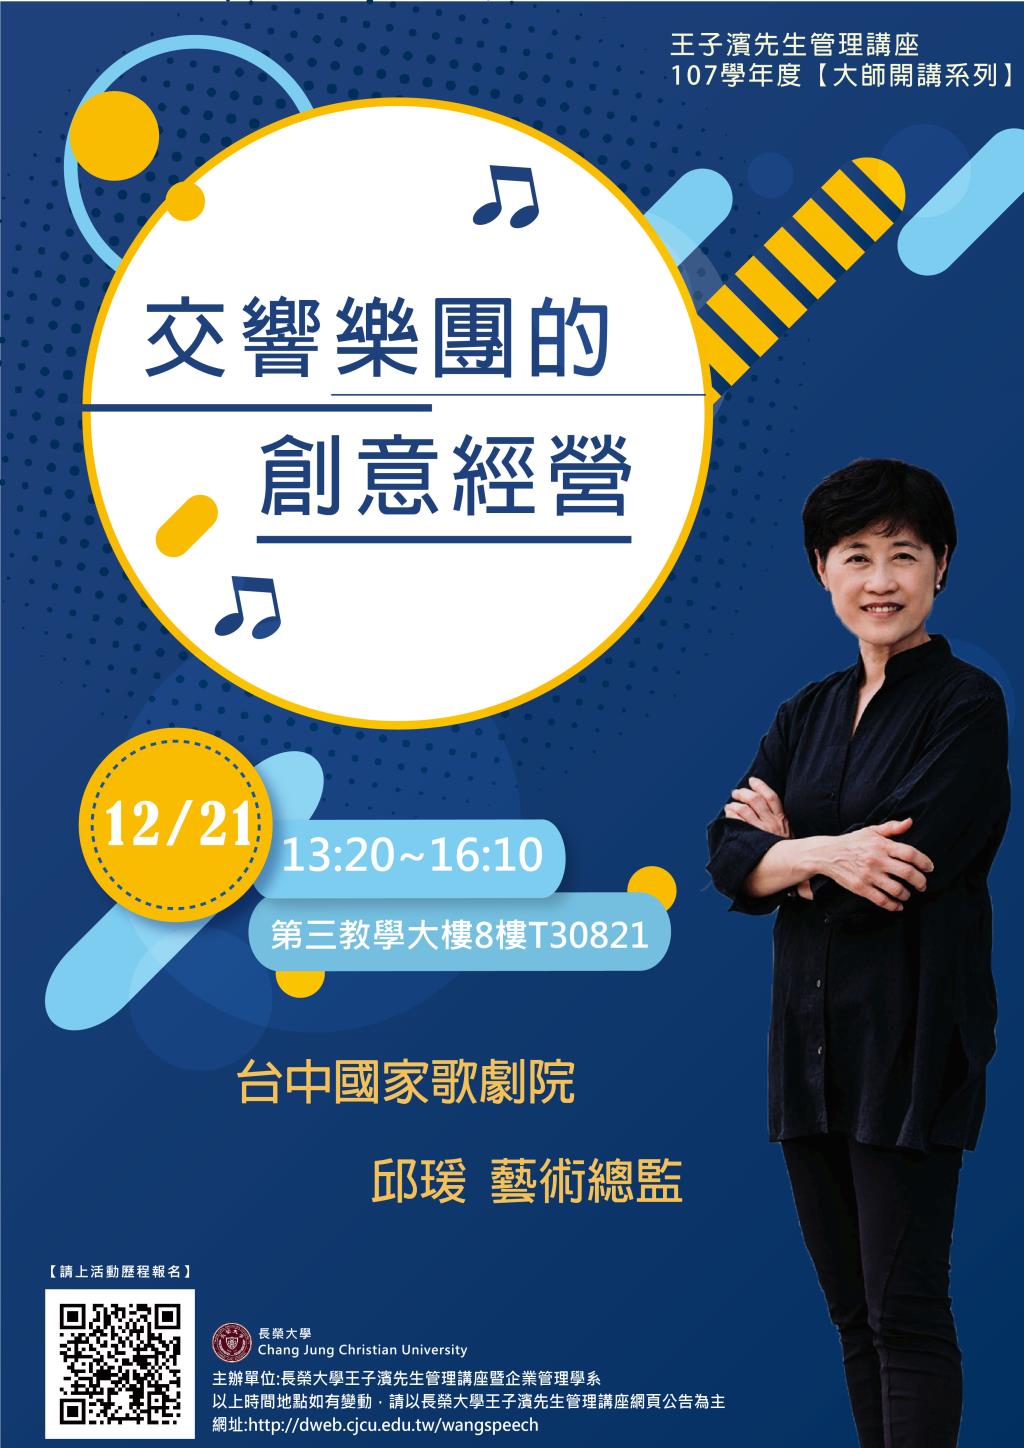 敬邀參加週五下午(12/21)王子濱先生管理講座---台中國家歌劇院  邱瑗藝術總監